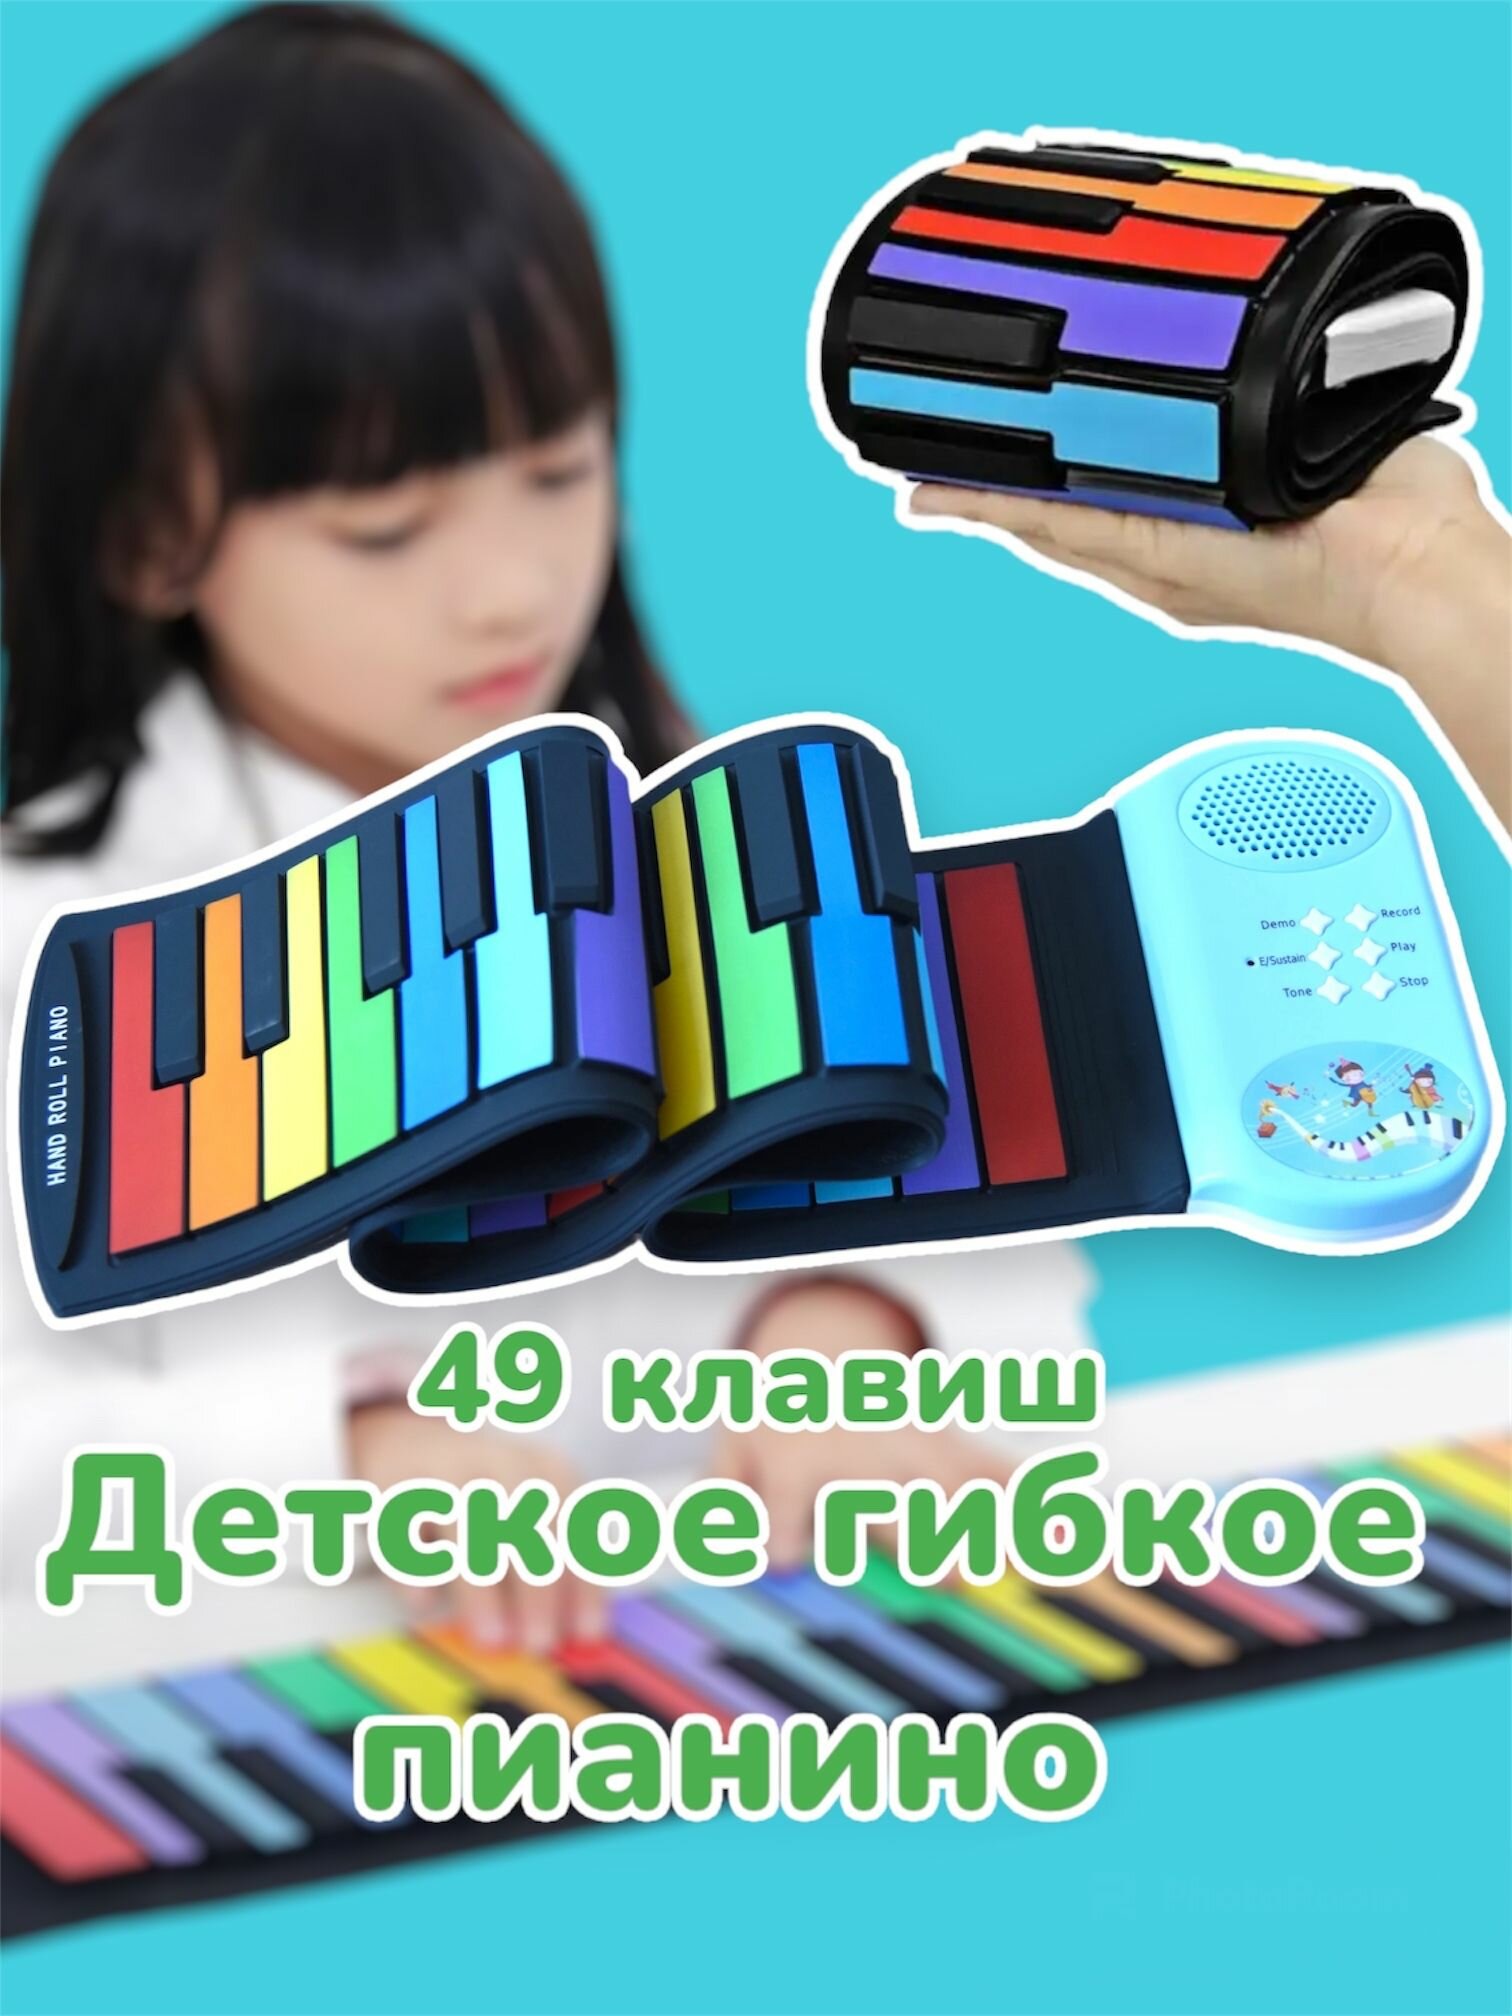 Электронное пианино детское гибкое 49 клавиш